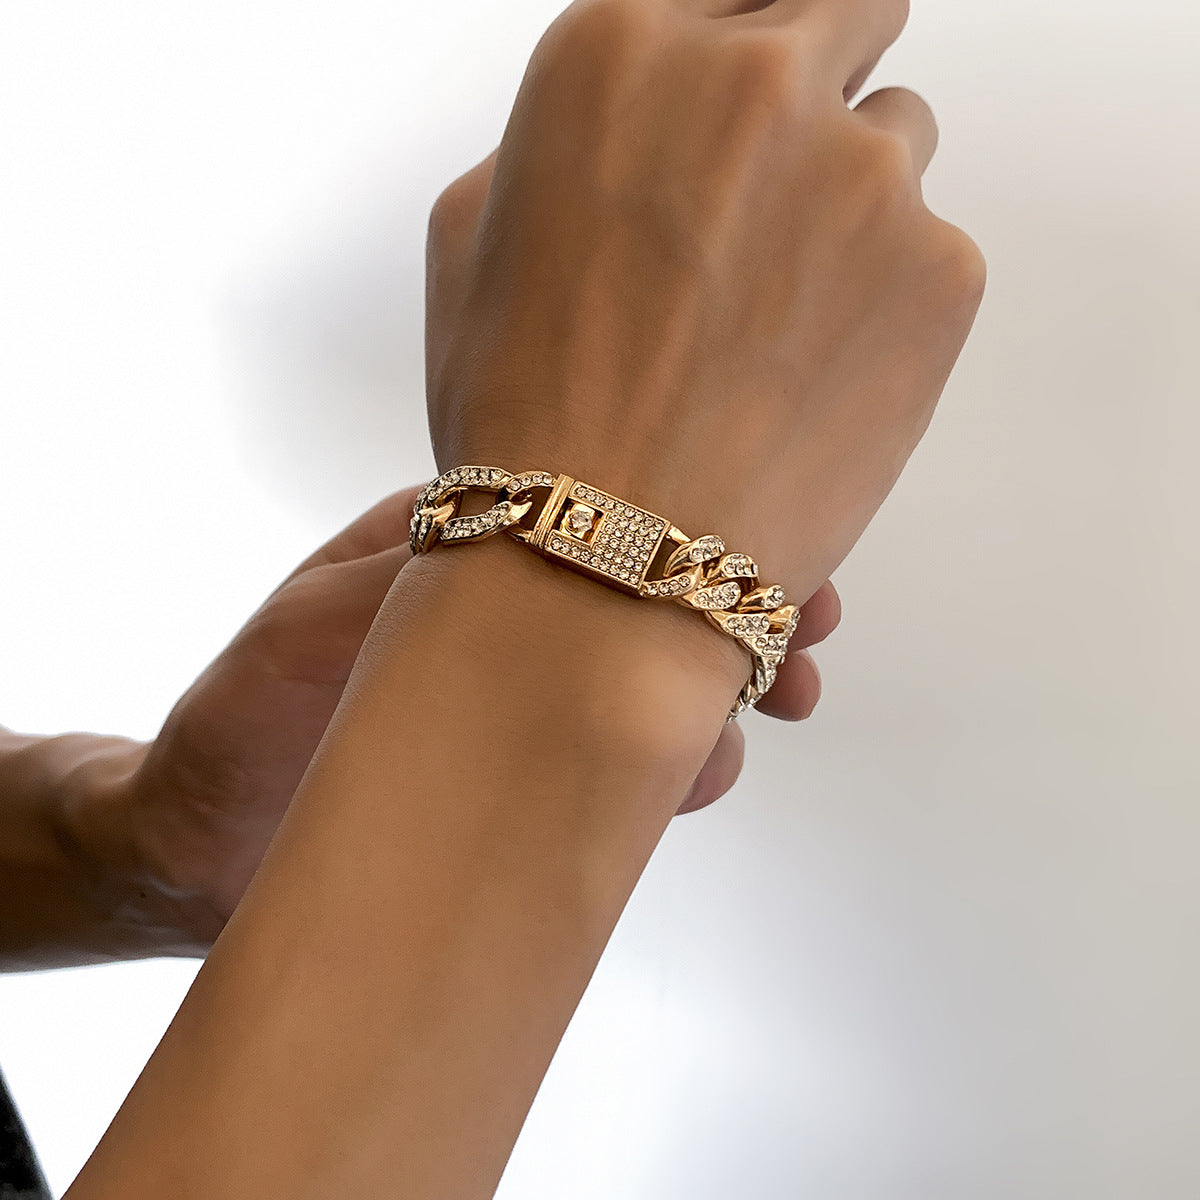 Fashion hip hop design bracelet - Syble's